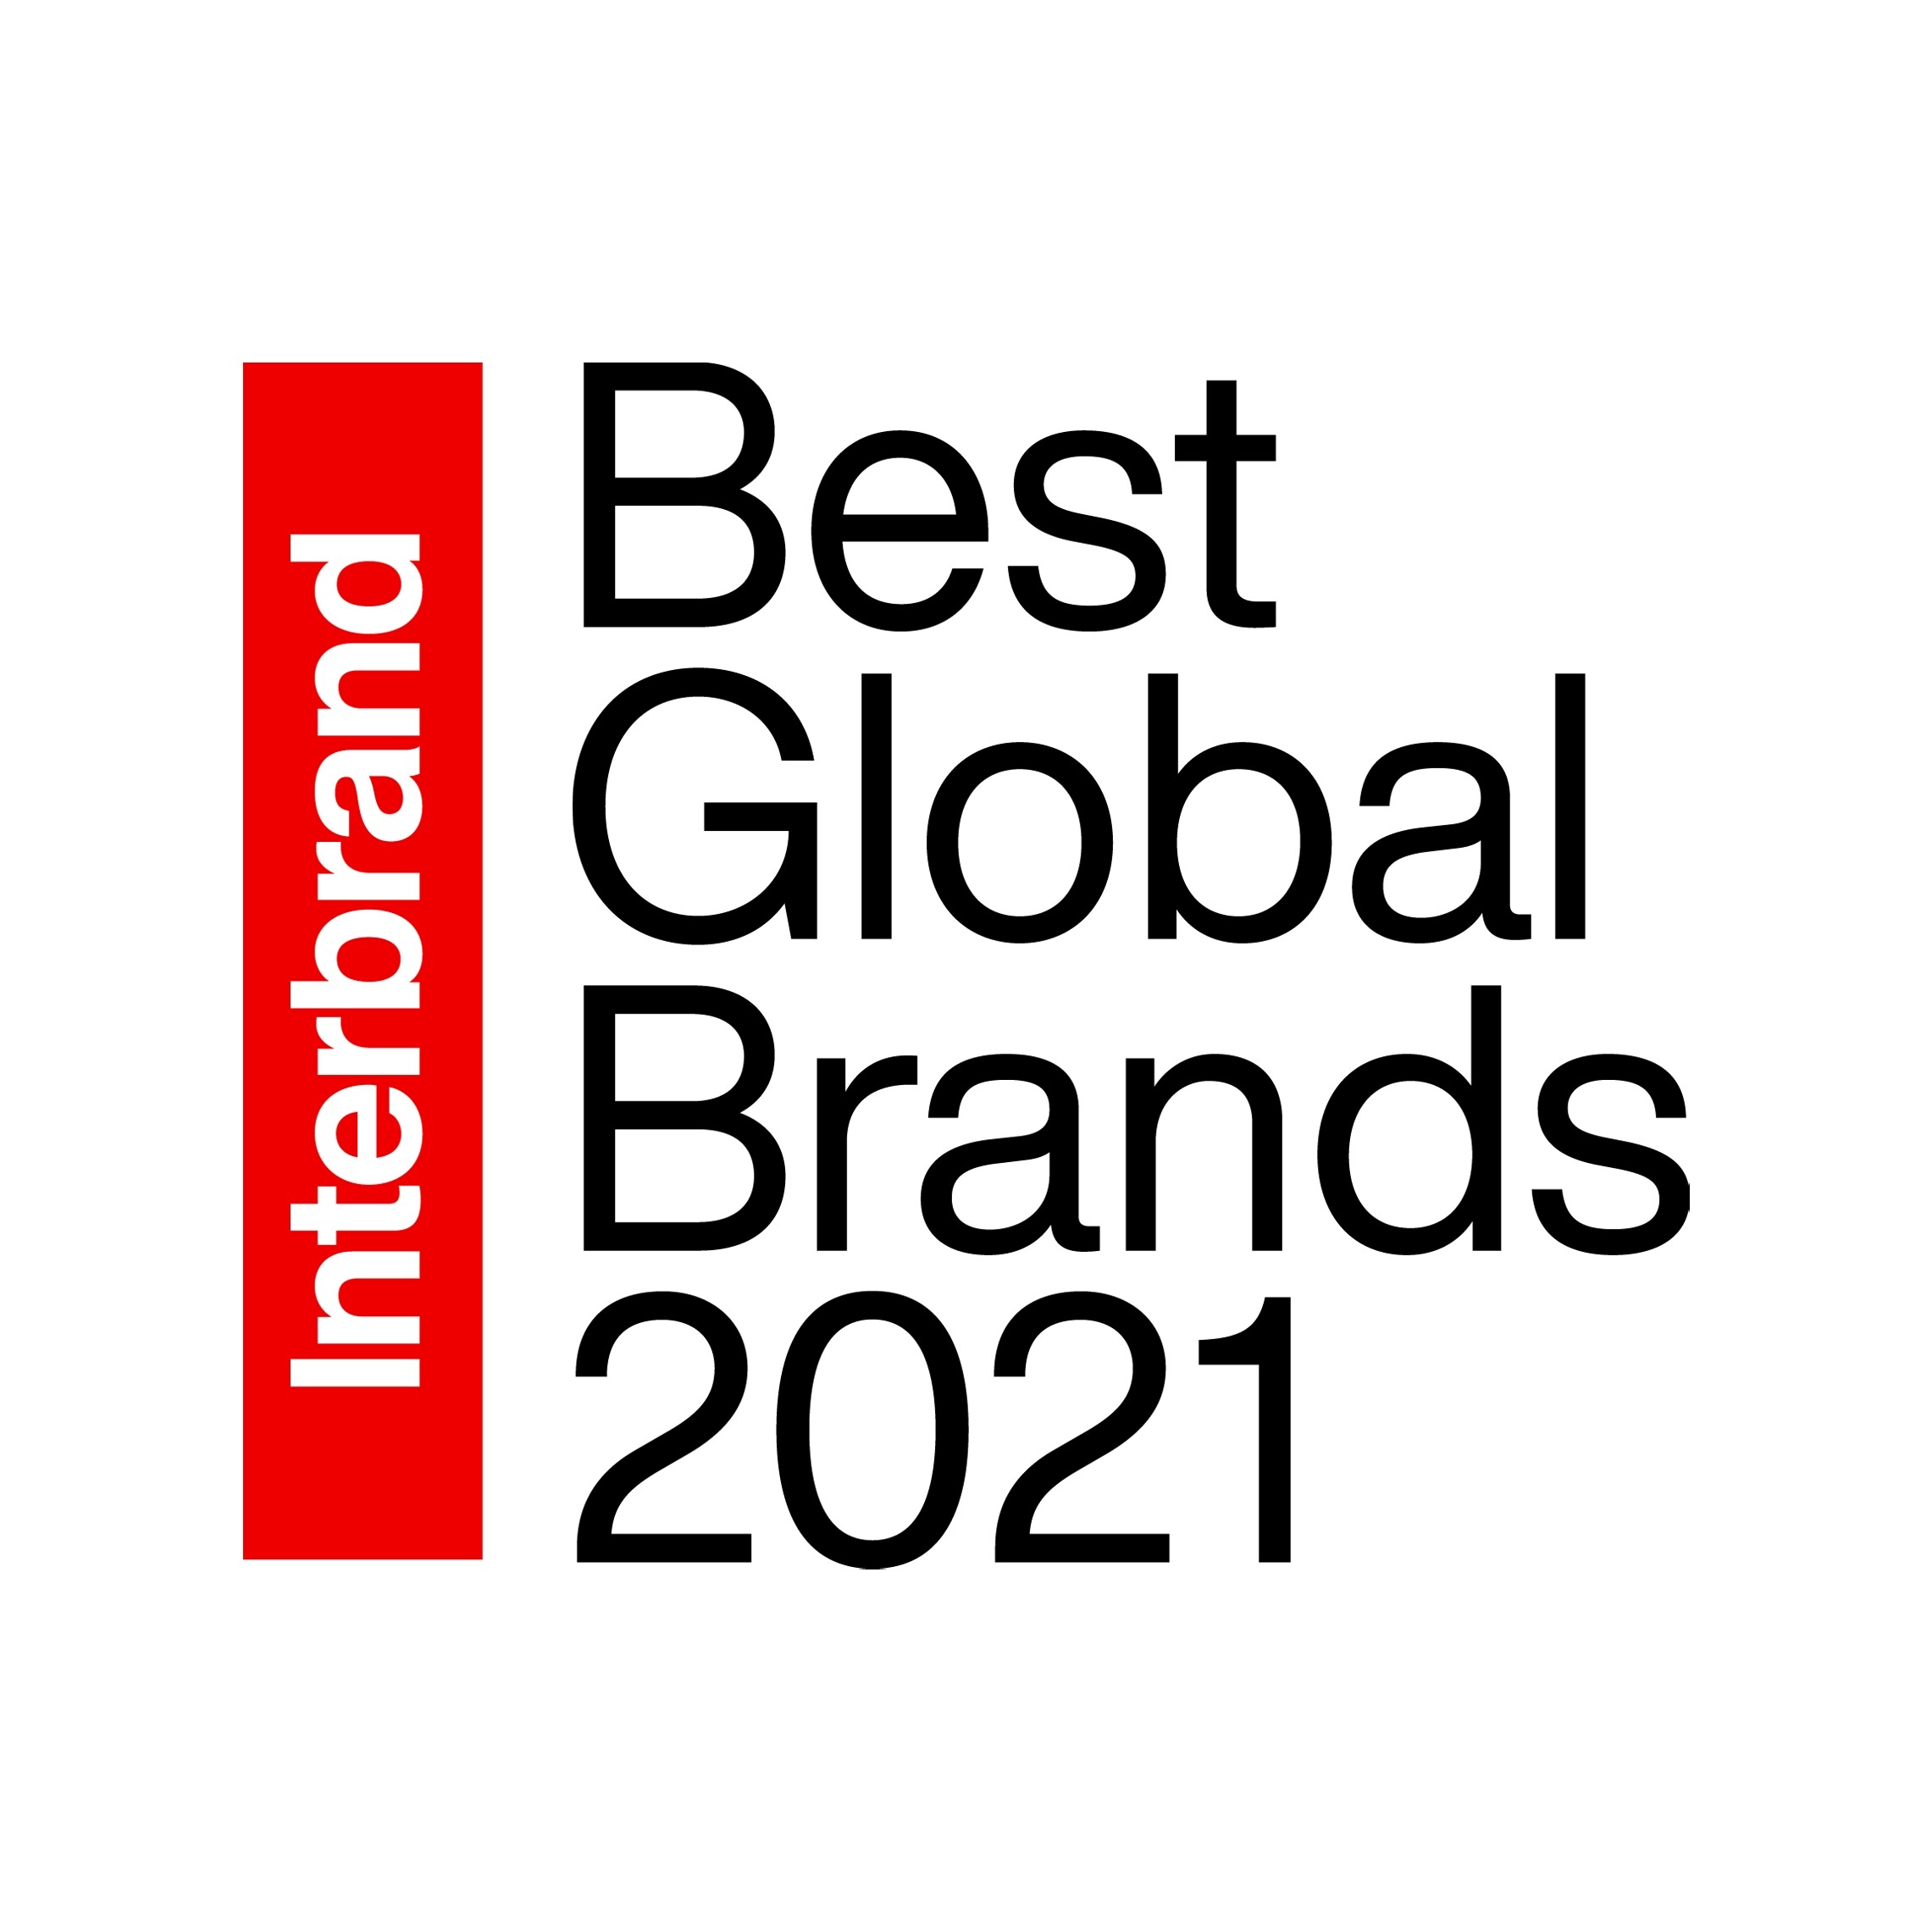 ซัมซุงคว้าตำแหน่งอันดับท็อป 5 แบรนด์ที่ดีที่สุดในโลกต่อเนื่องเป็นปีที่ 2  จัดอันดับโดย Interbrand's Best Global Brands 2021